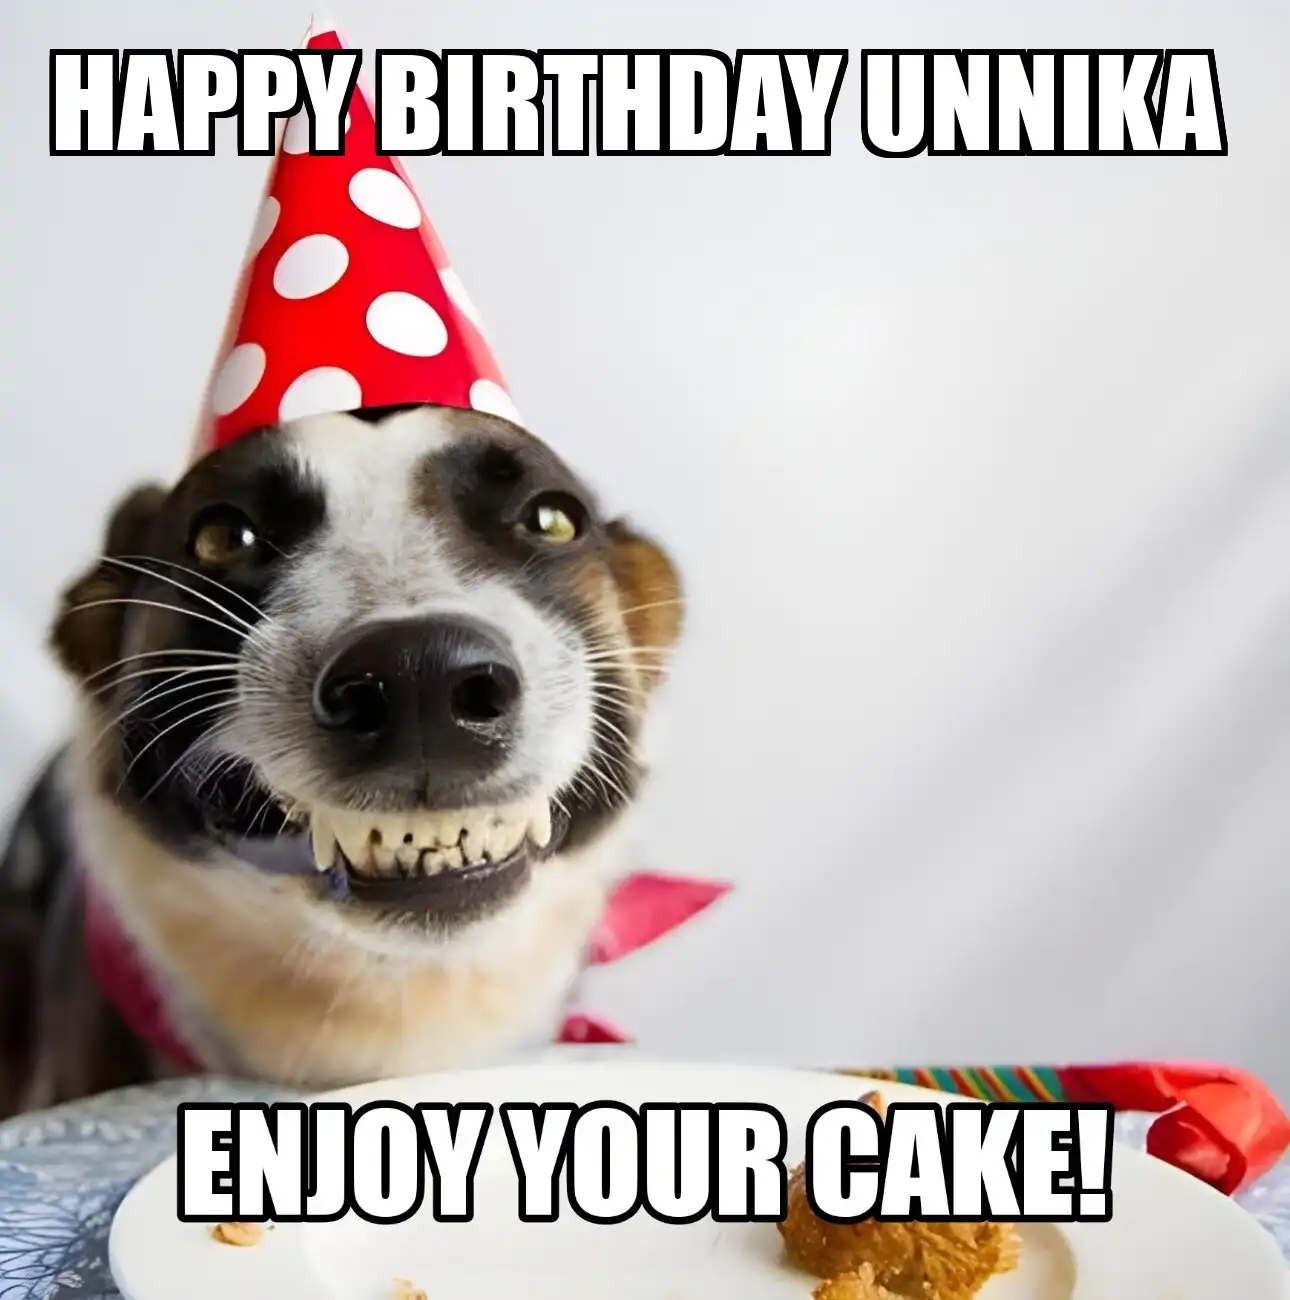 Happy Birthday Unnika Enjoy Your Cake Dog Meme